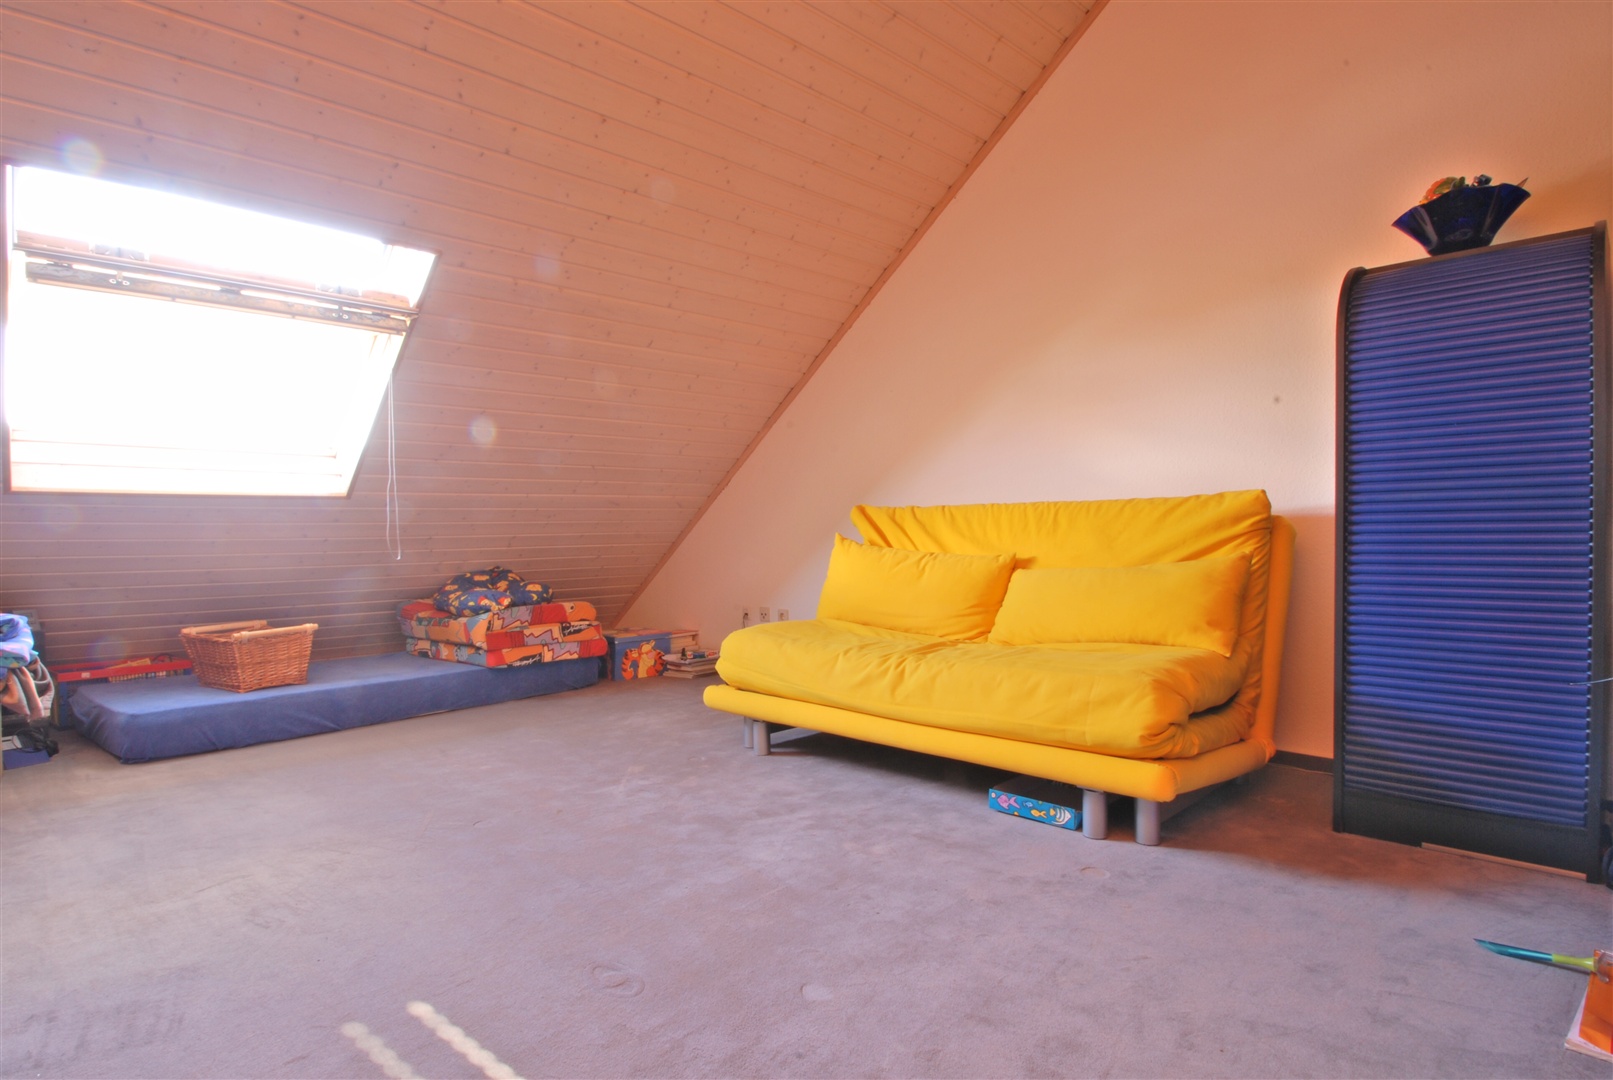 sehr großes elternschlafzimmer im dachgeschoß - Oliver Reifferscheid - Immobilienmakler Darmstadt